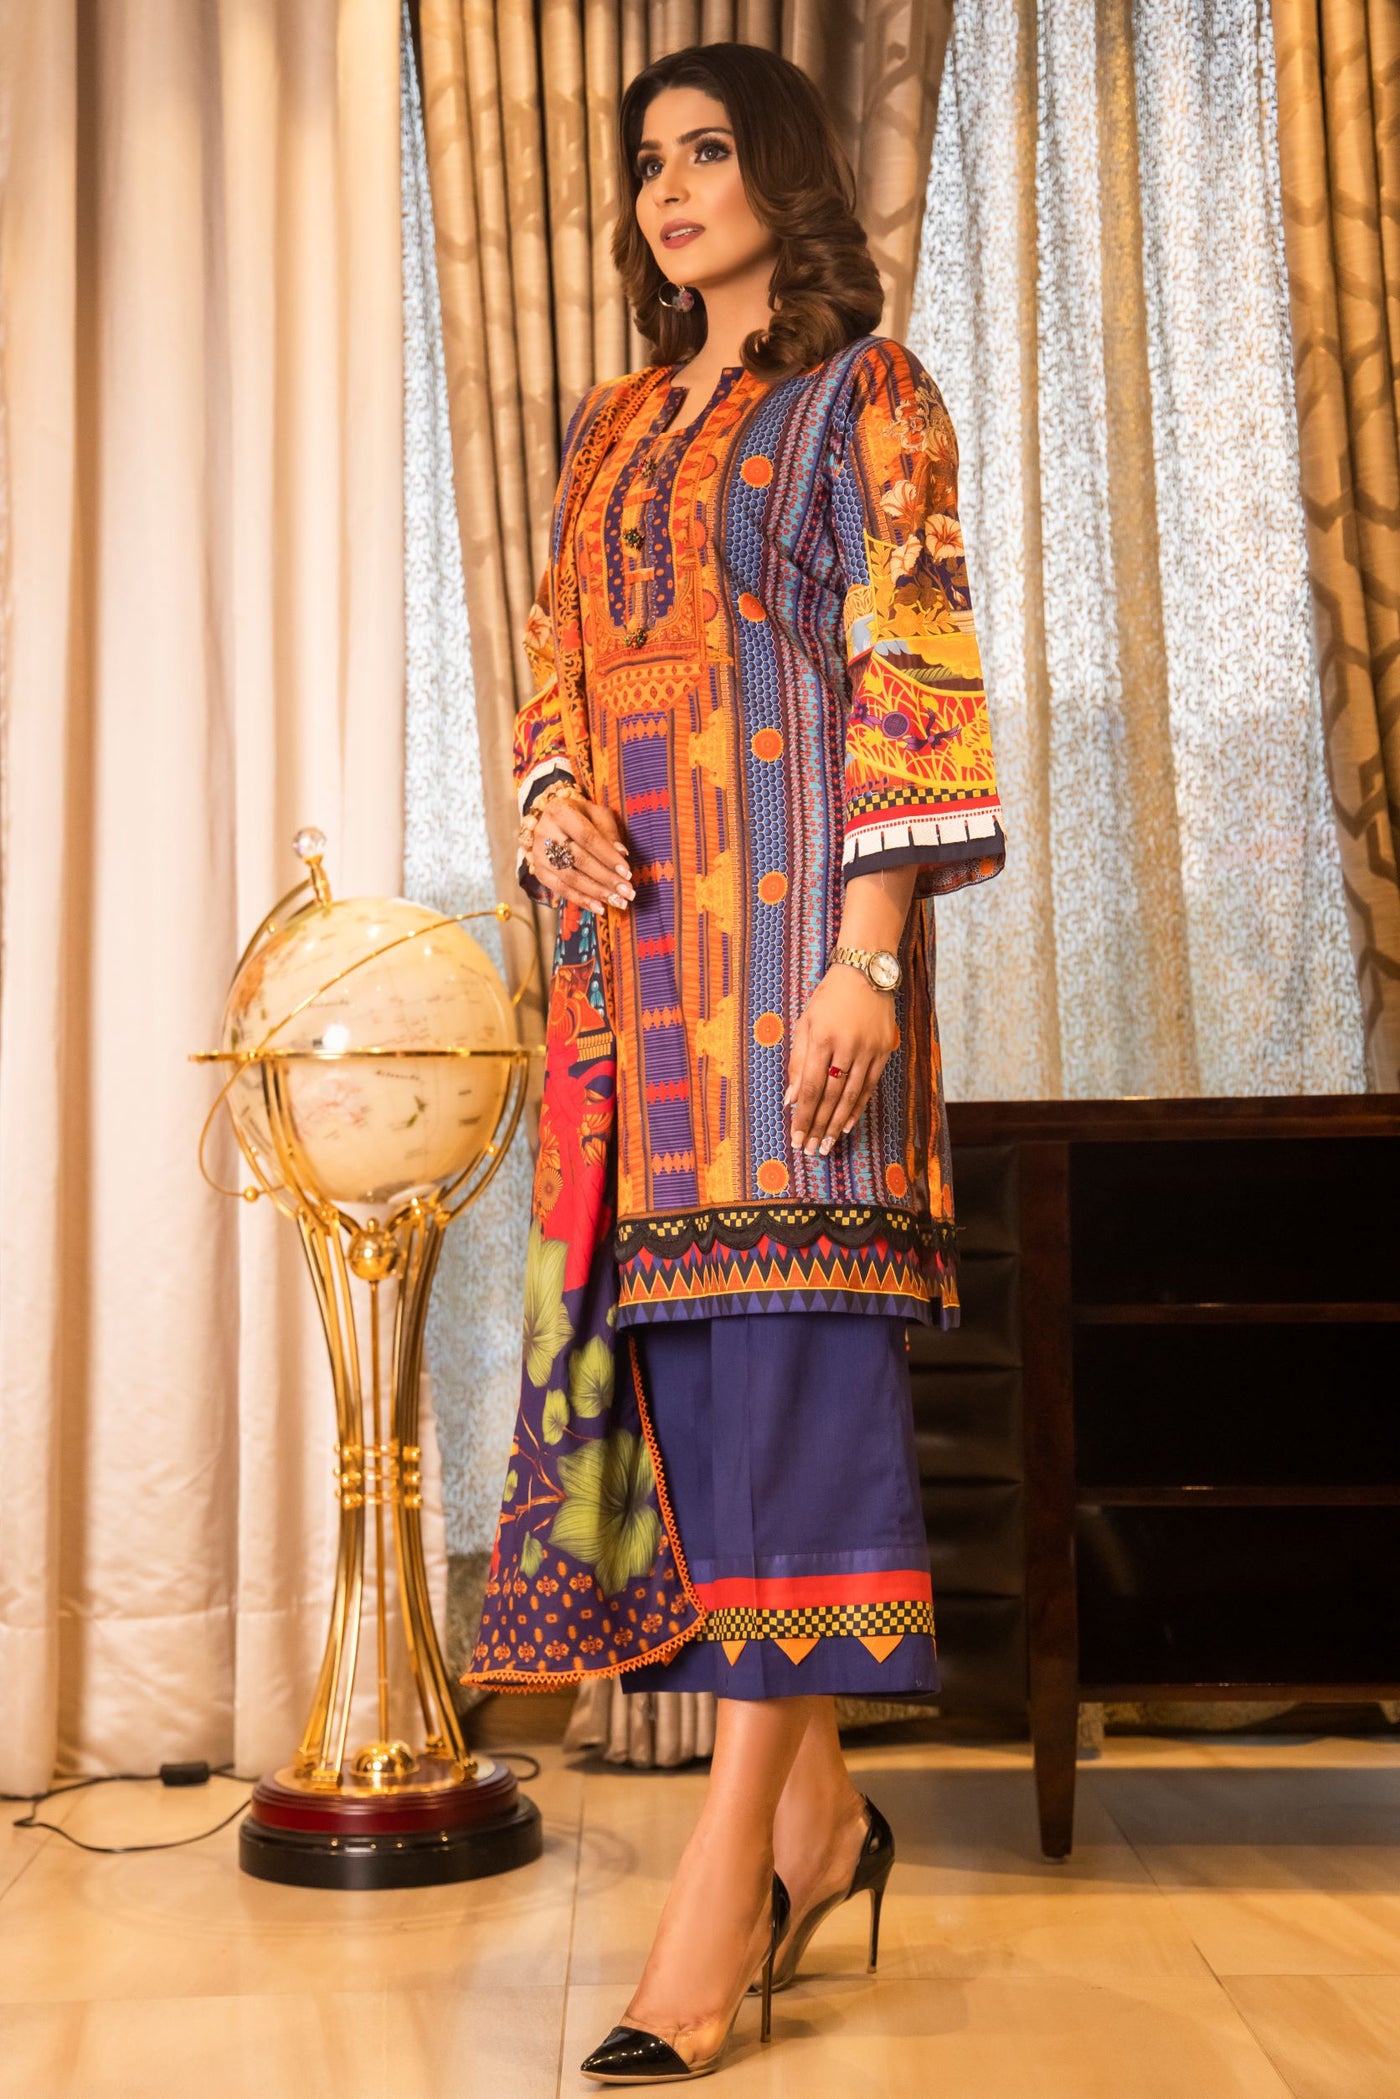 3 Piece Lawn Elegant Summer Suit Beautiful Multi Color Suit Rang-e-Bahar - Front side view